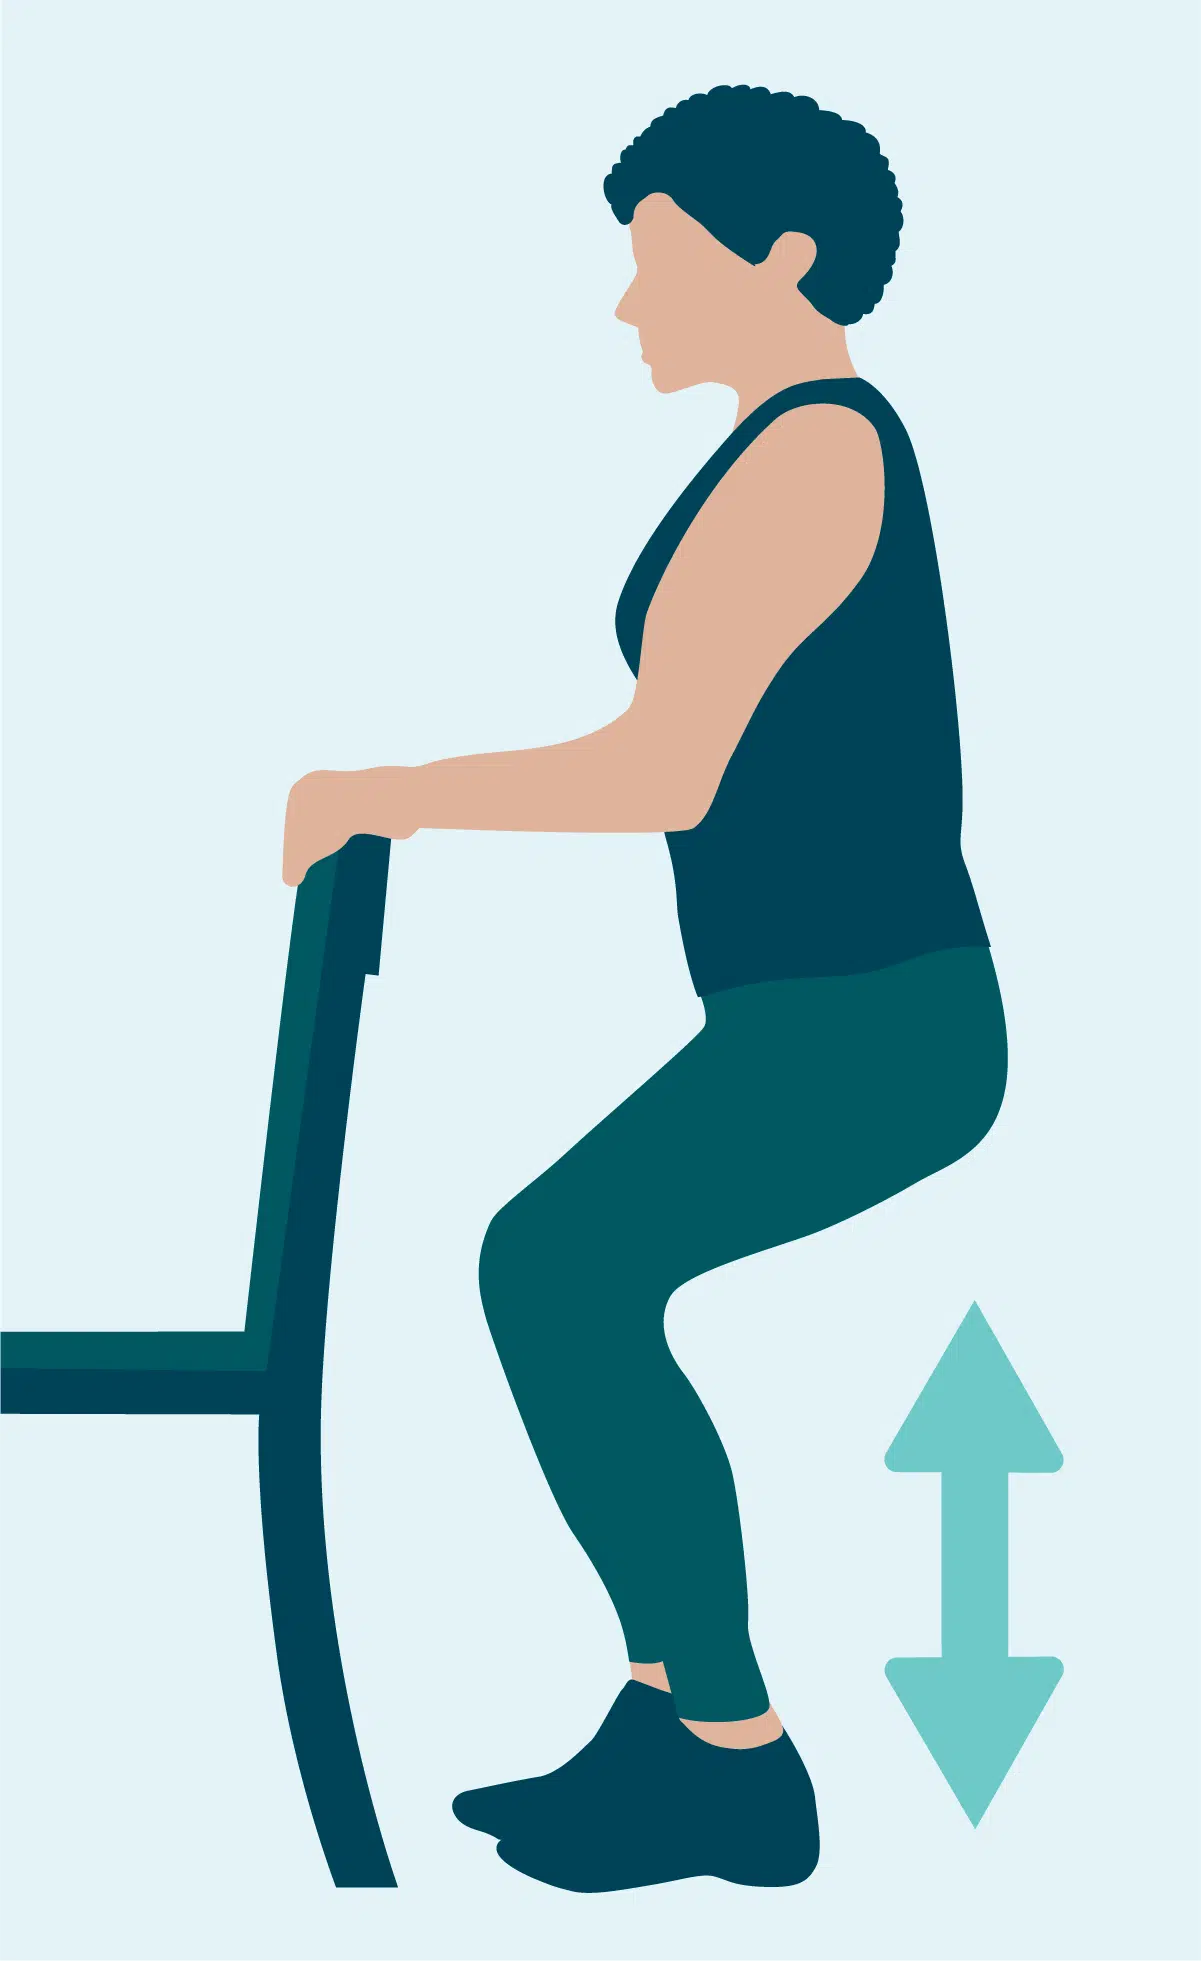 10 easy exercises for seniors for Balance & Reduce Risk from Falls